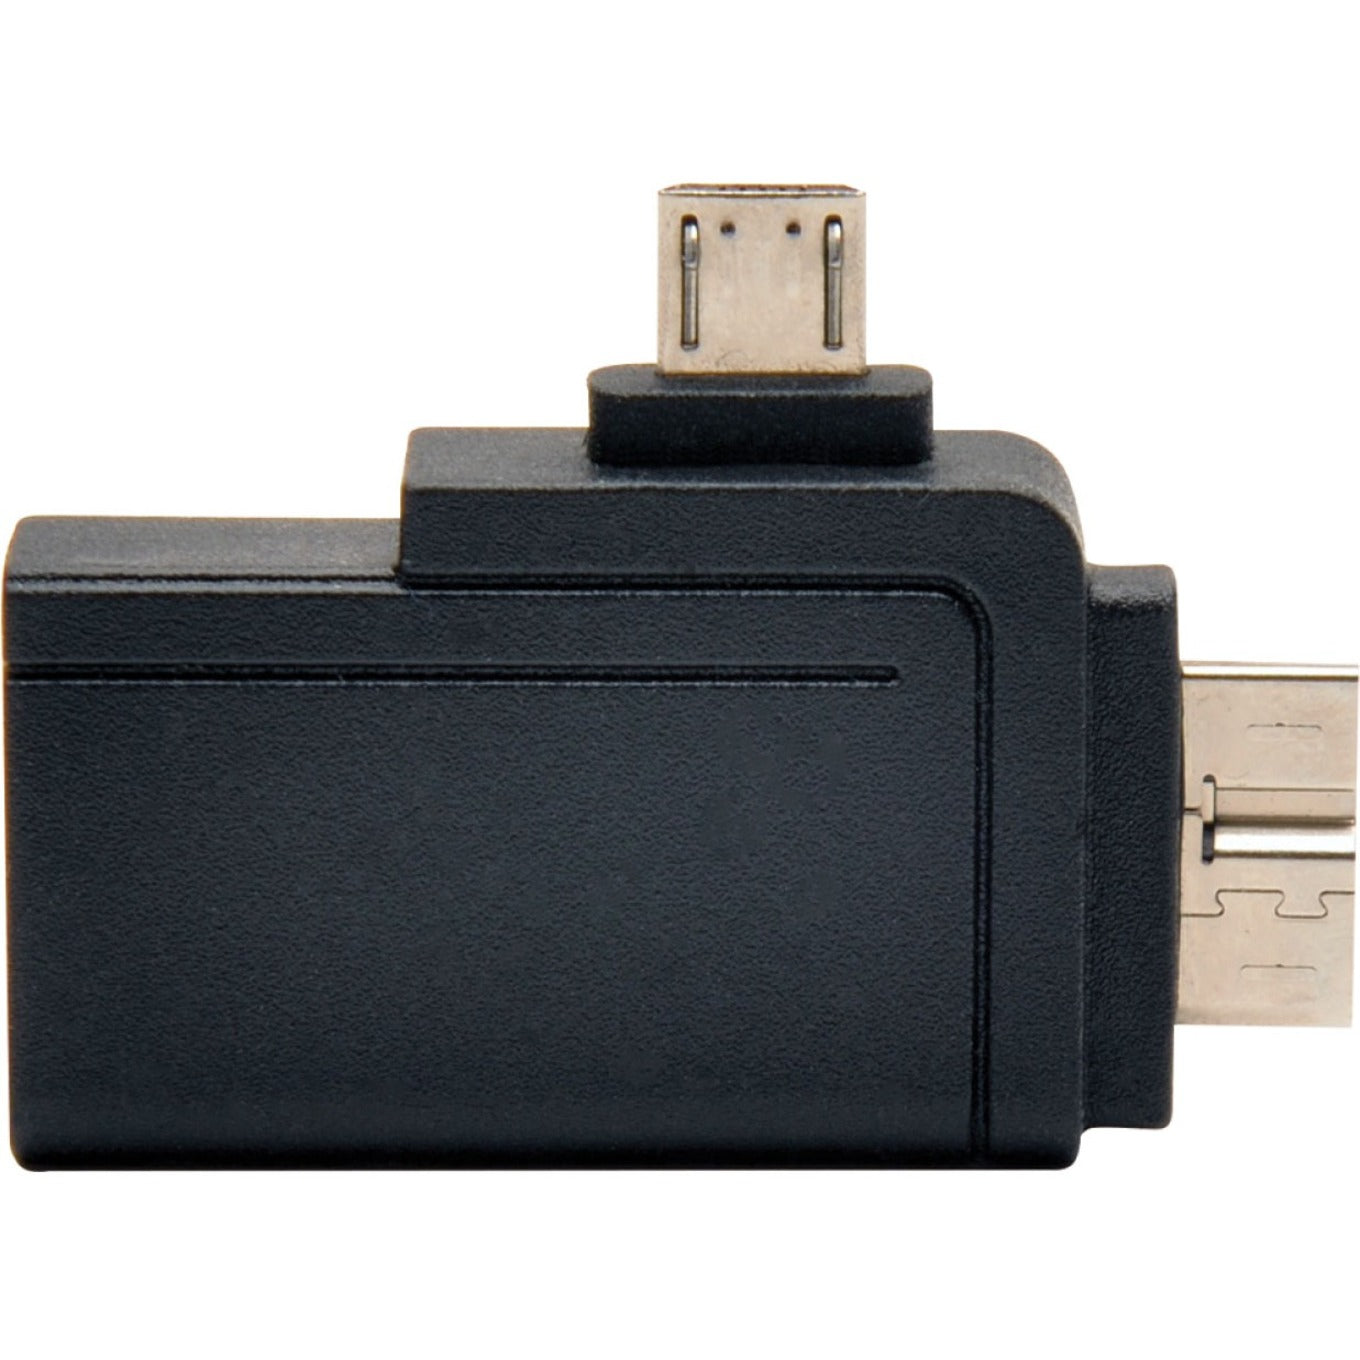 Tripp Lite U053-000-OTG 2-in-1 OTG Adattatore USB 3.0 + 2.0 Adattatore di Trasferimento Dati